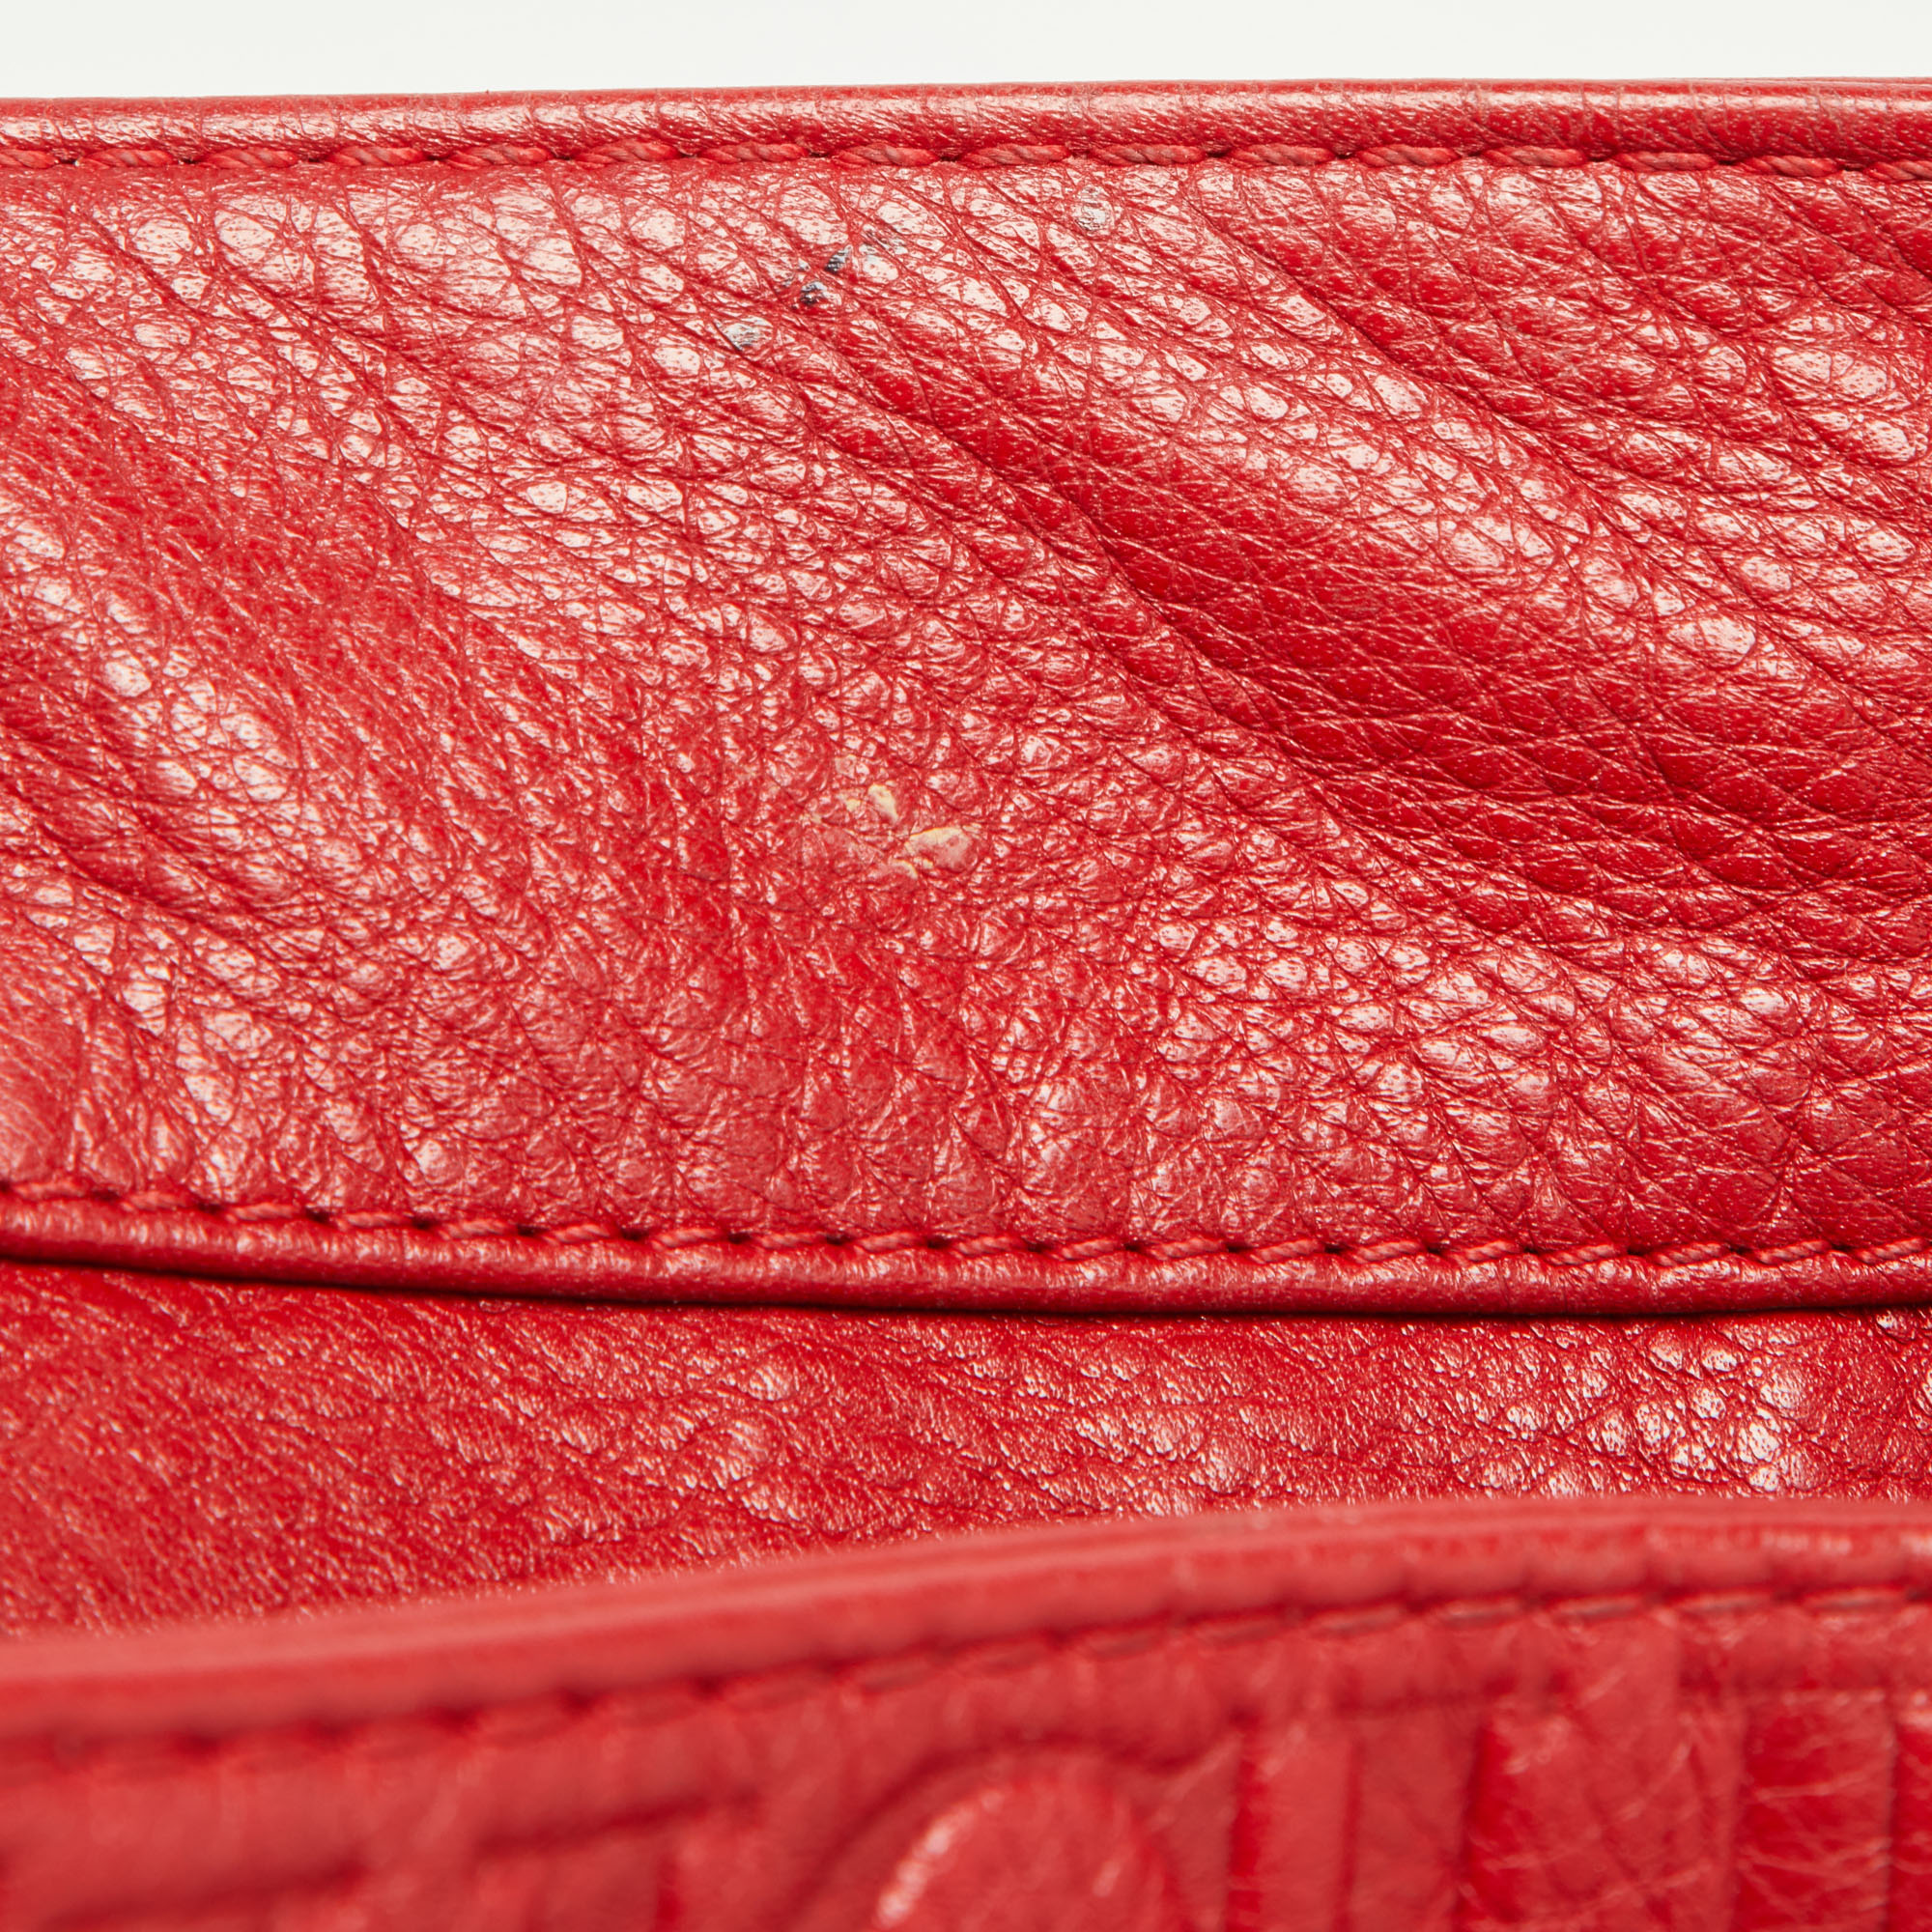 Carolina Herrera Red Monogram Embossed Leather Chain Bow Hobo